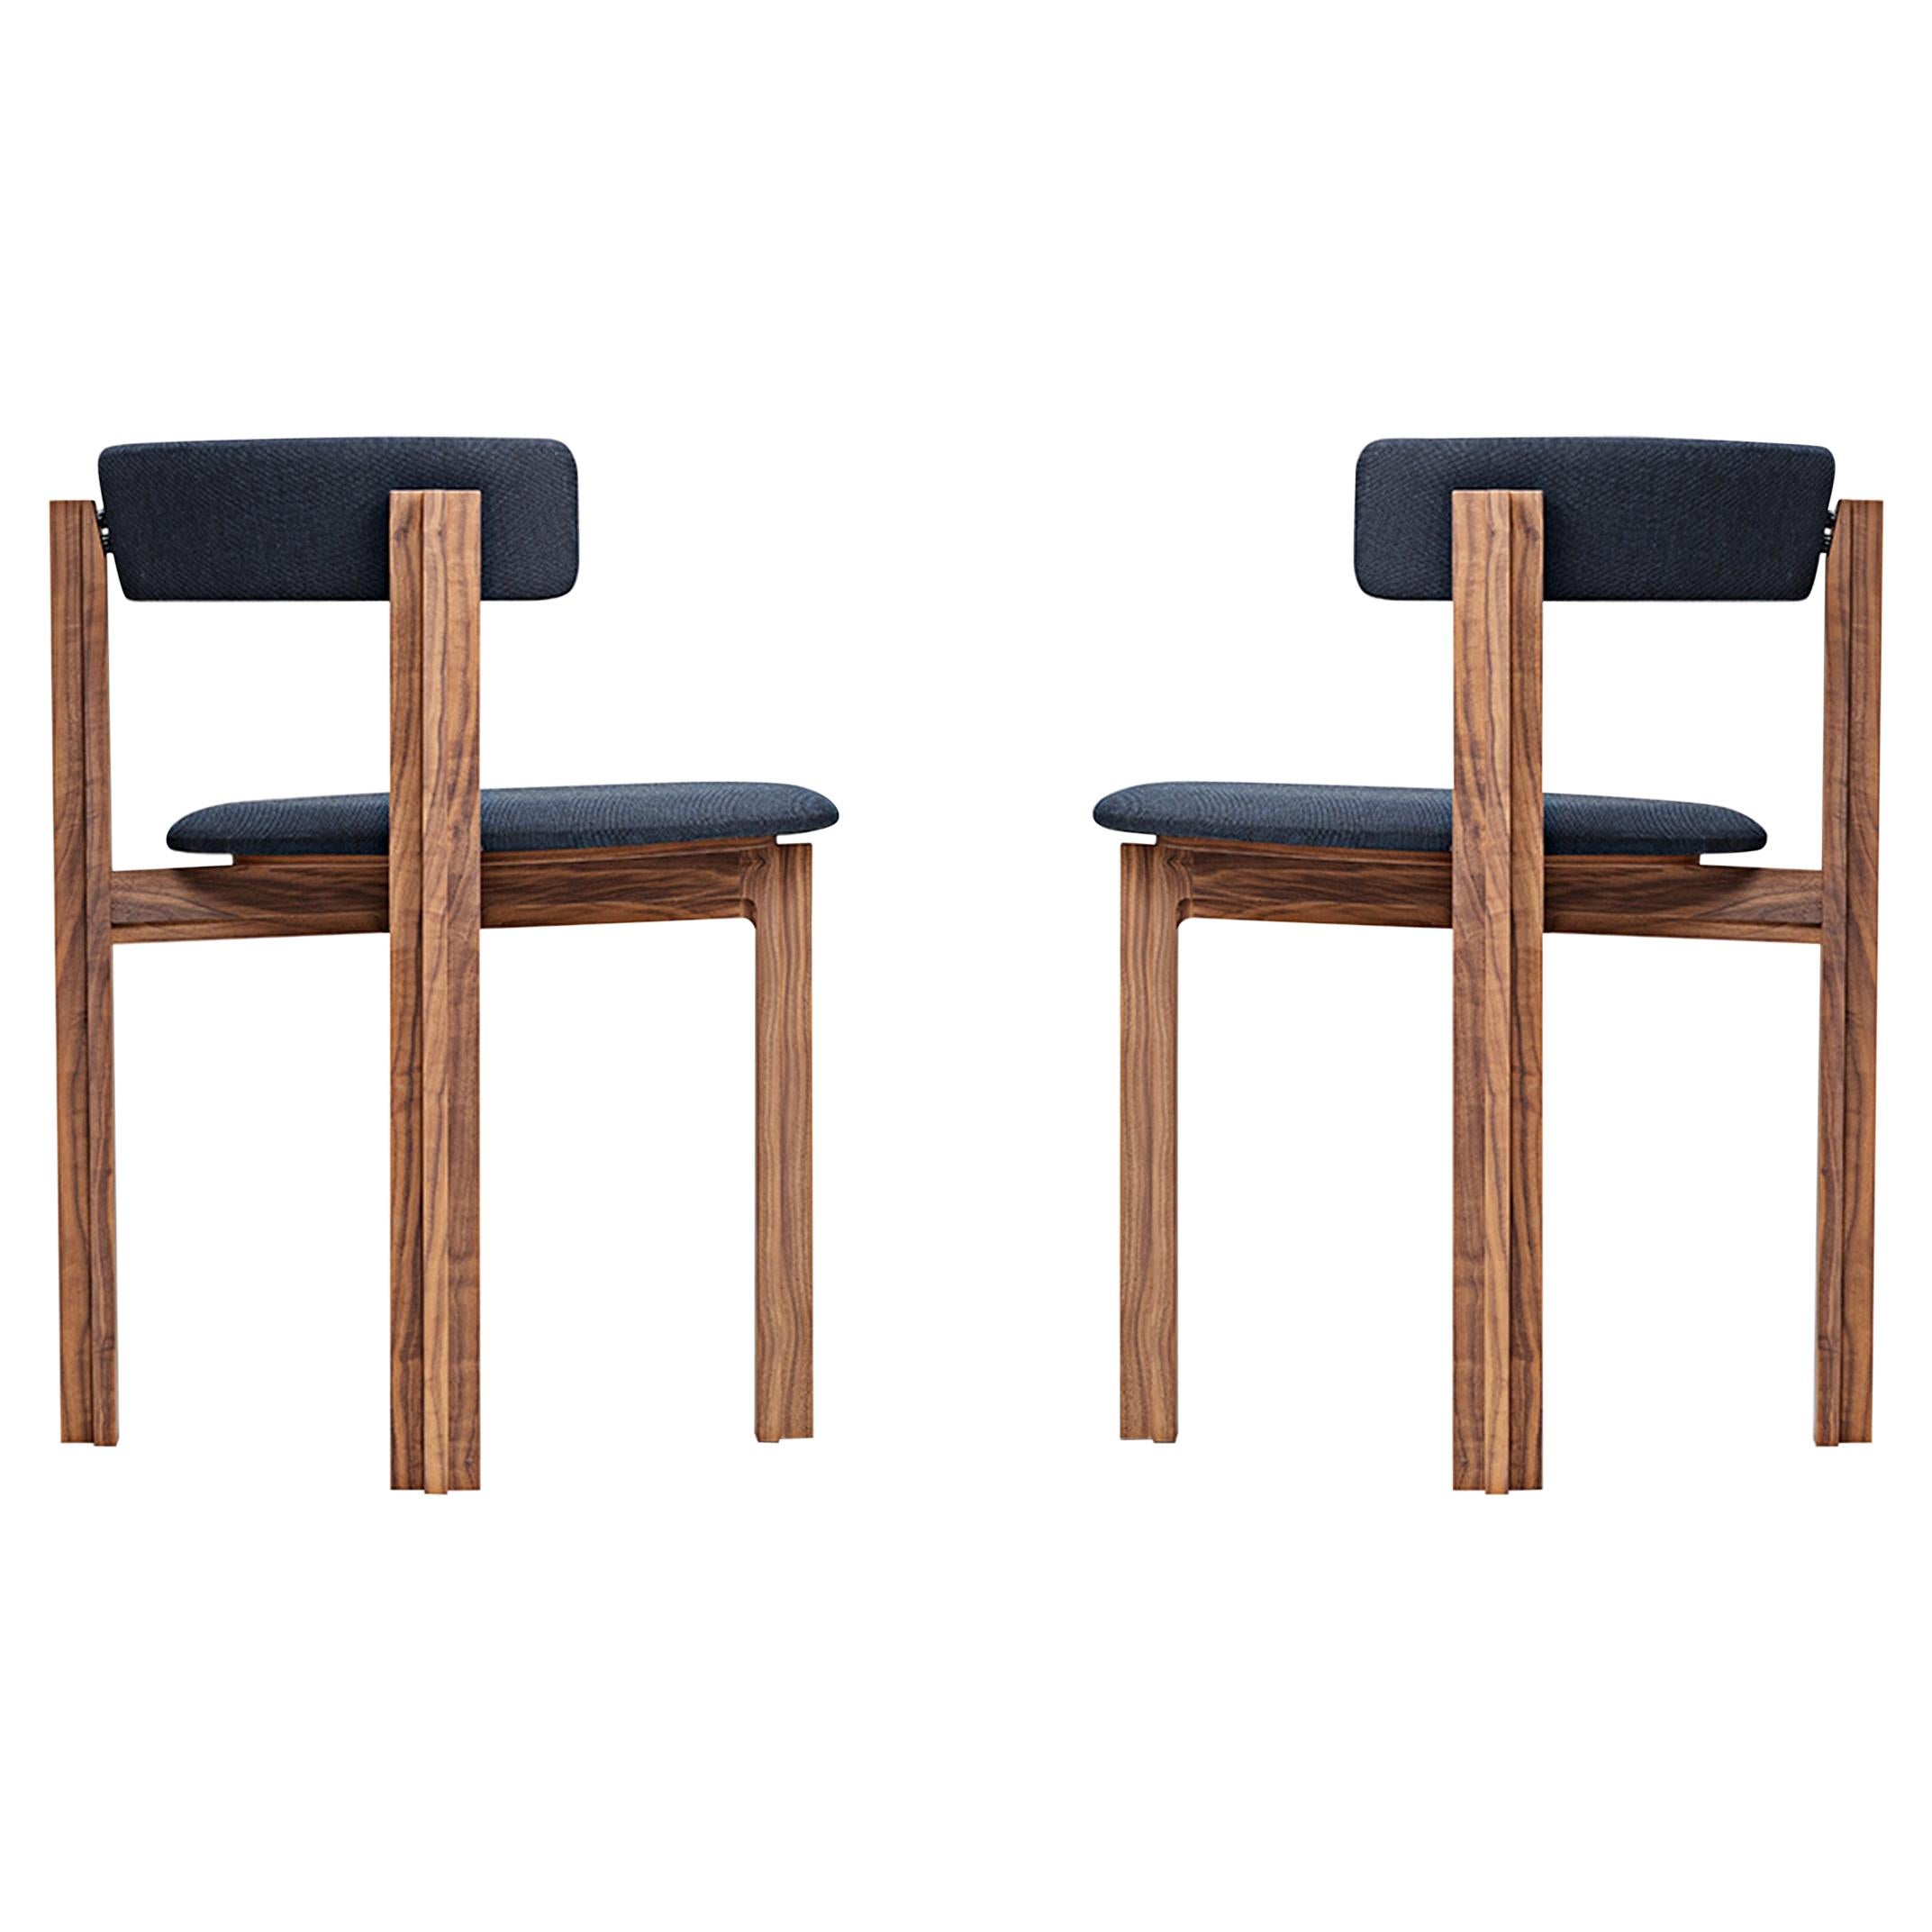 Ensemble de deux chaises principales en bois pour salle à manger conçues par Bodil Kjr pour Karakter